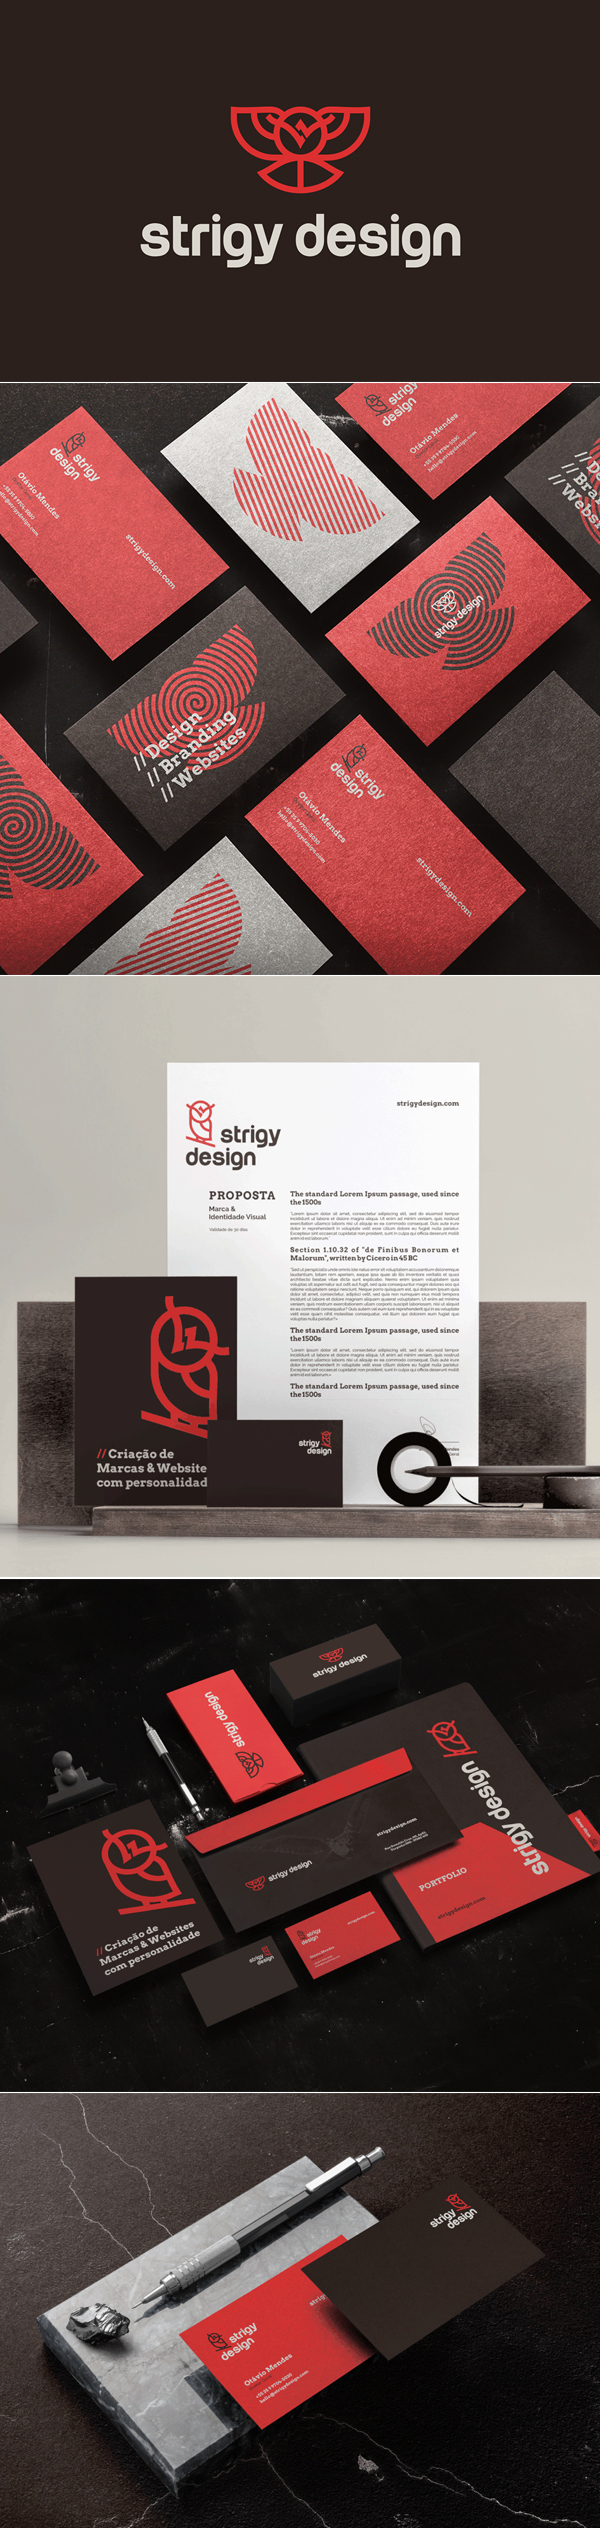 Strigy Design Branding Identity by Strigy Design